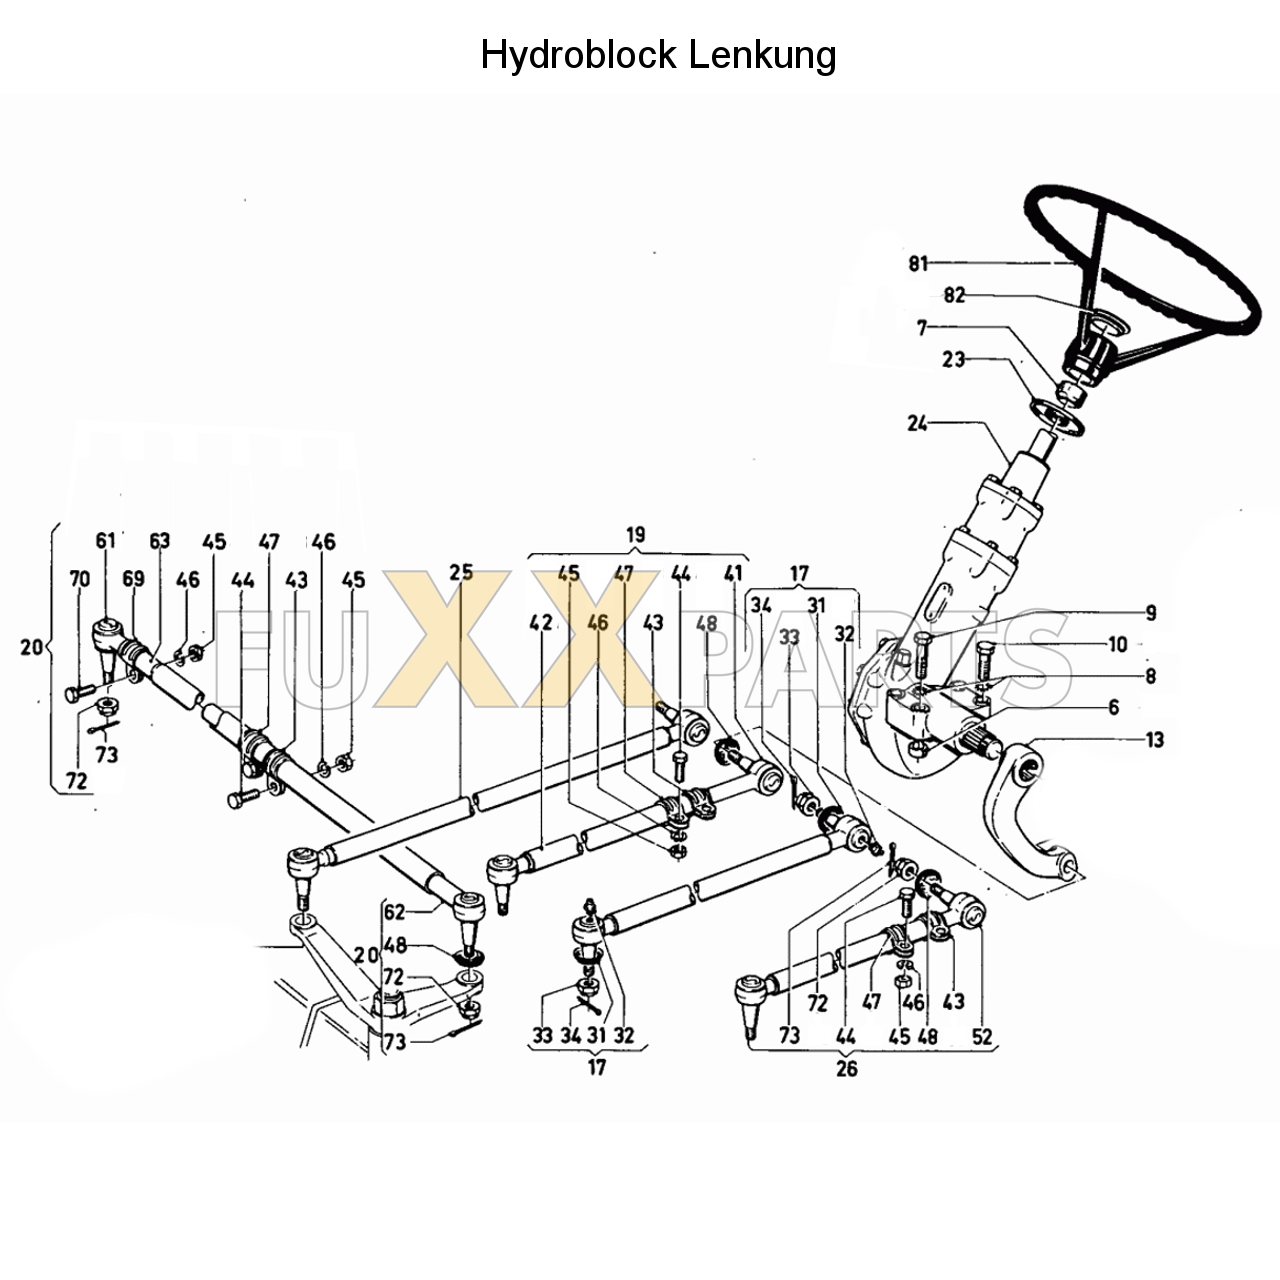 D 8006 Hydraulische Lenkung (Hydroblock) 1